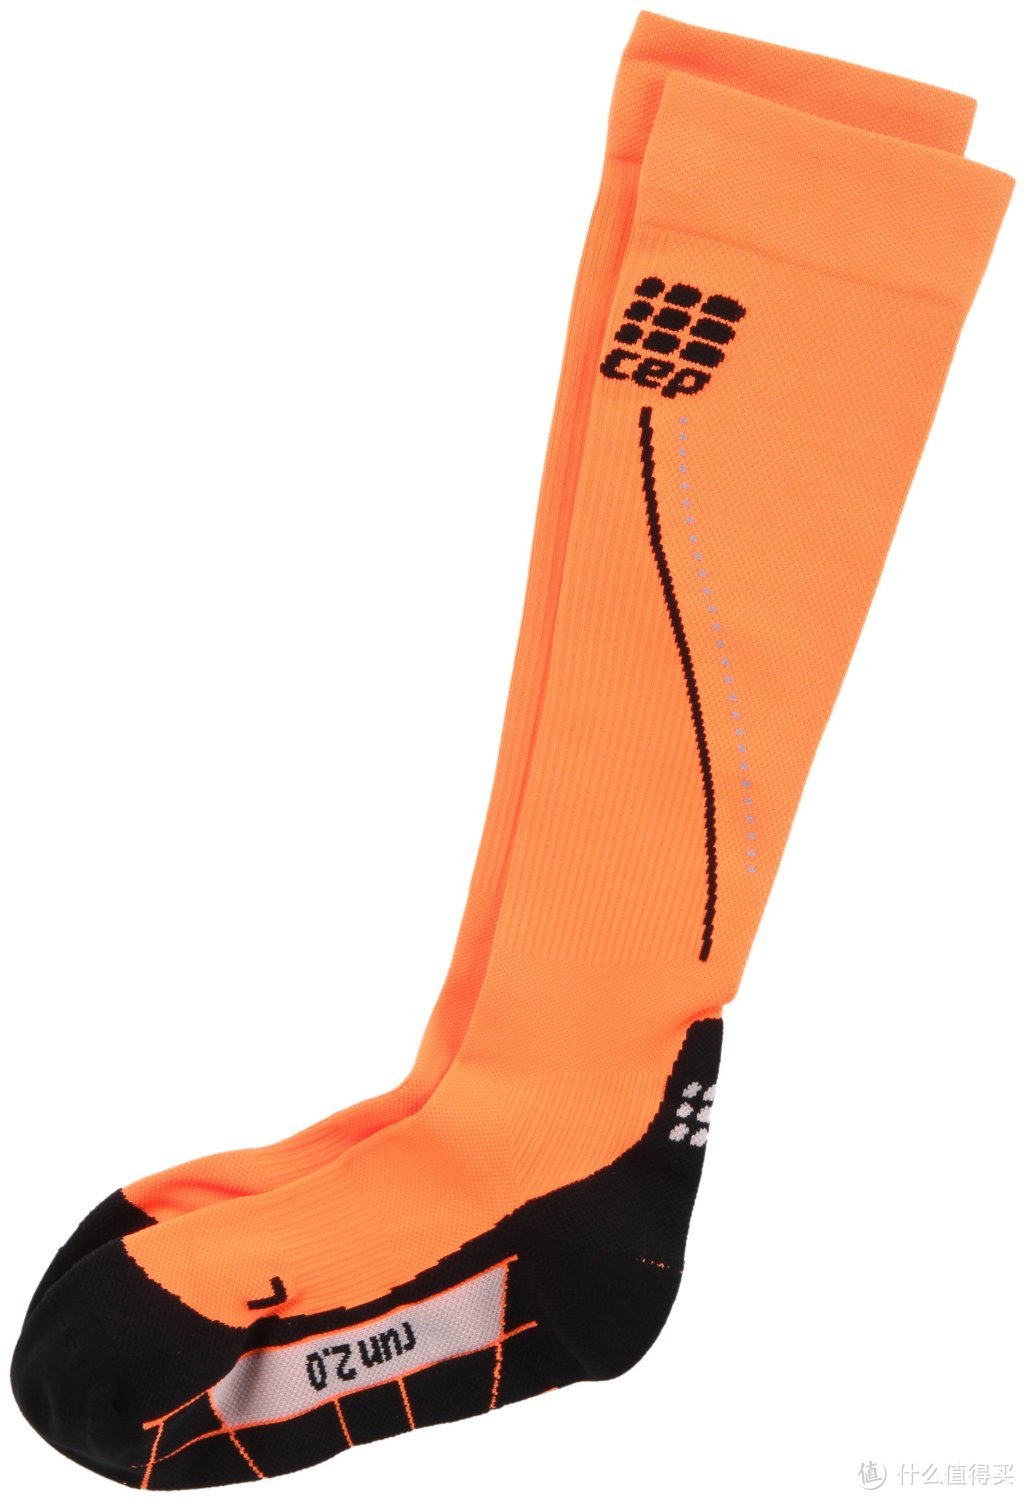 比压缩裤还贵的袜子：CEP Progressive+ Night Run Socks 2.0夜跑压缩袜评测